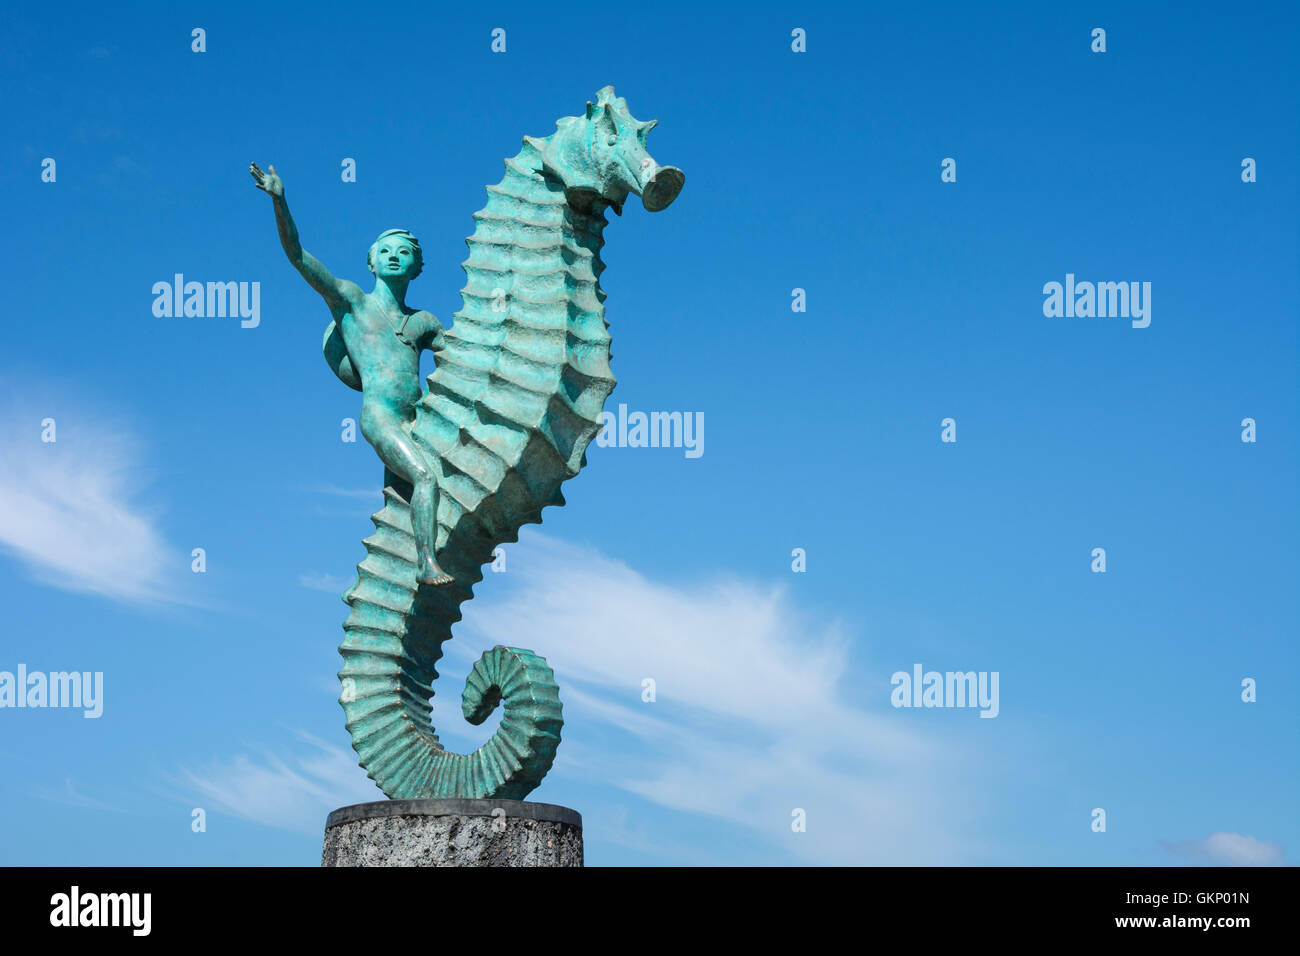 "Garçon sur la sculpture des hippocampes par Rafael Zamarripa sur le Malecon à Puerto Vallarta, Jalisco, Mexique. Banque D'Images